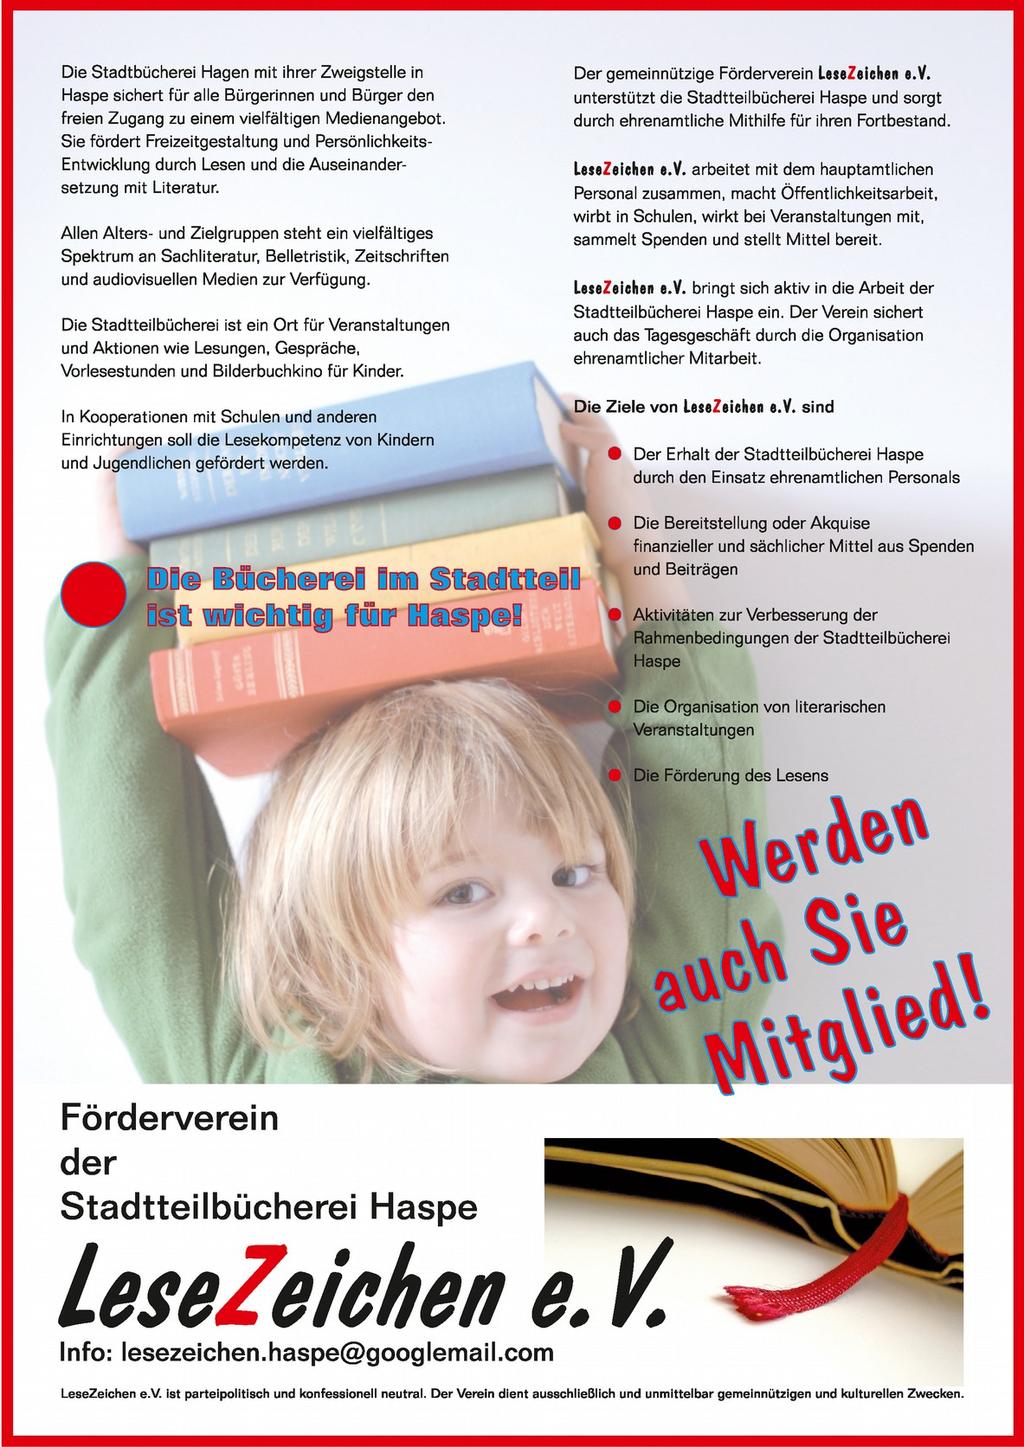 Die Stadtteilbücherei Haspe und der Förderverein LeseZeichen e.v. bieten regelmäßig Aktionen für Kinder an: Vorlesen, Bilderbuchkino, Kamishibai-Lesetheater, Bastel- und Spielenachmittage.